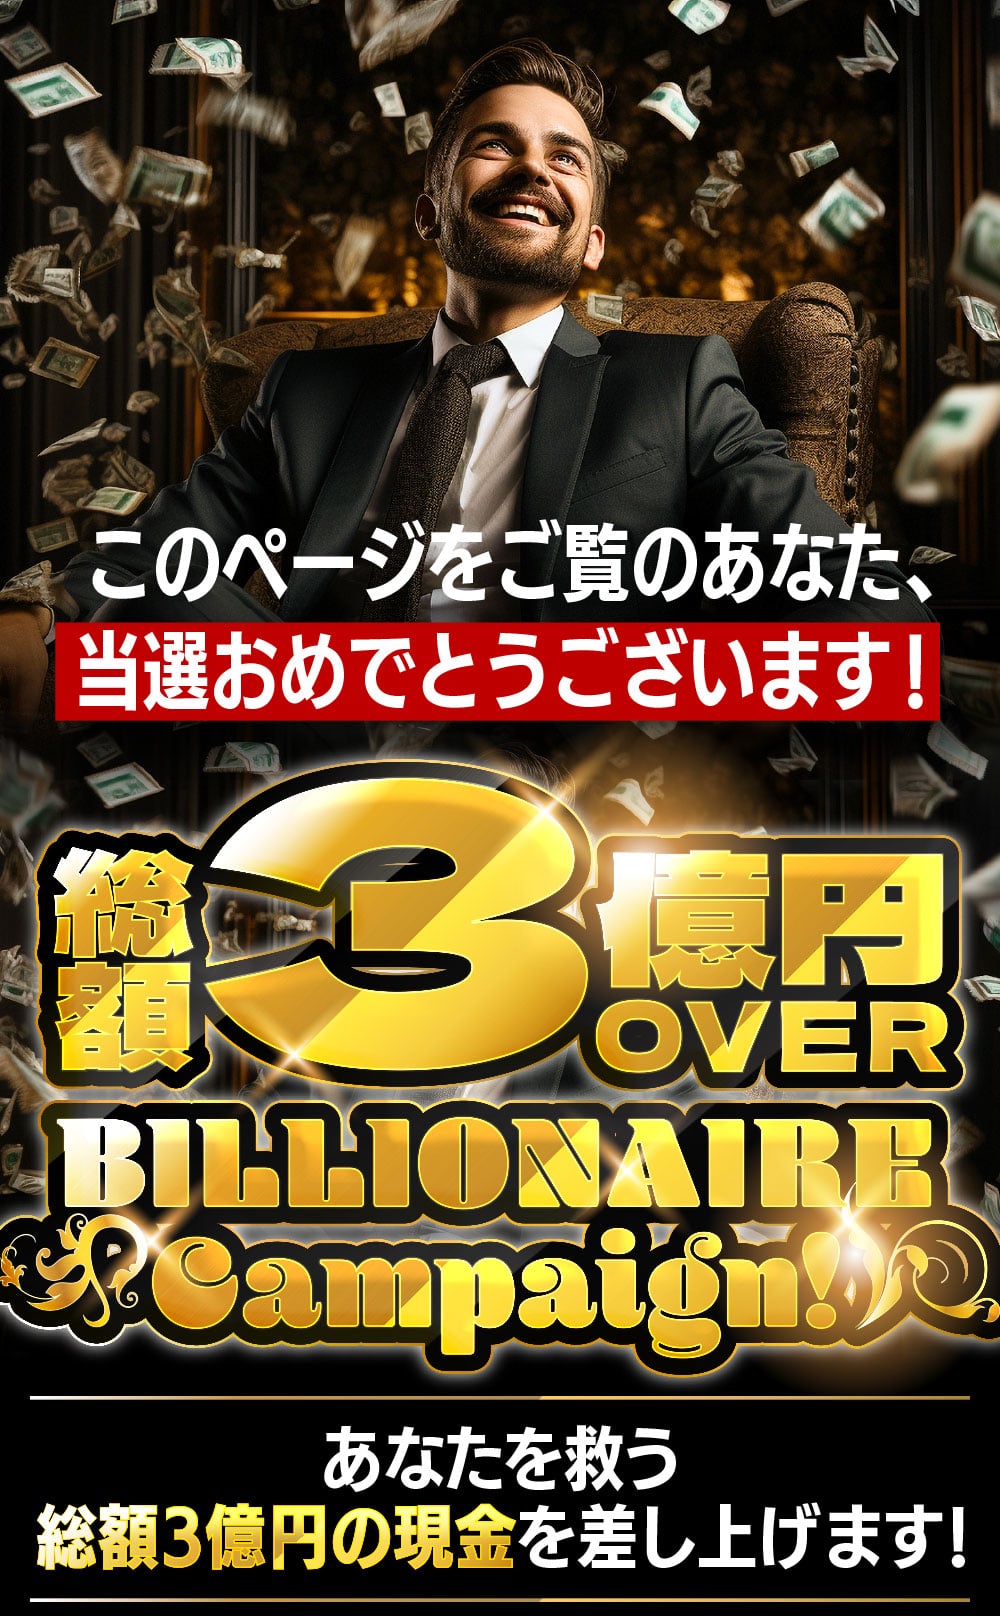 当選おめでとうございます！総額3億円OVER!Billionaire Campaign!